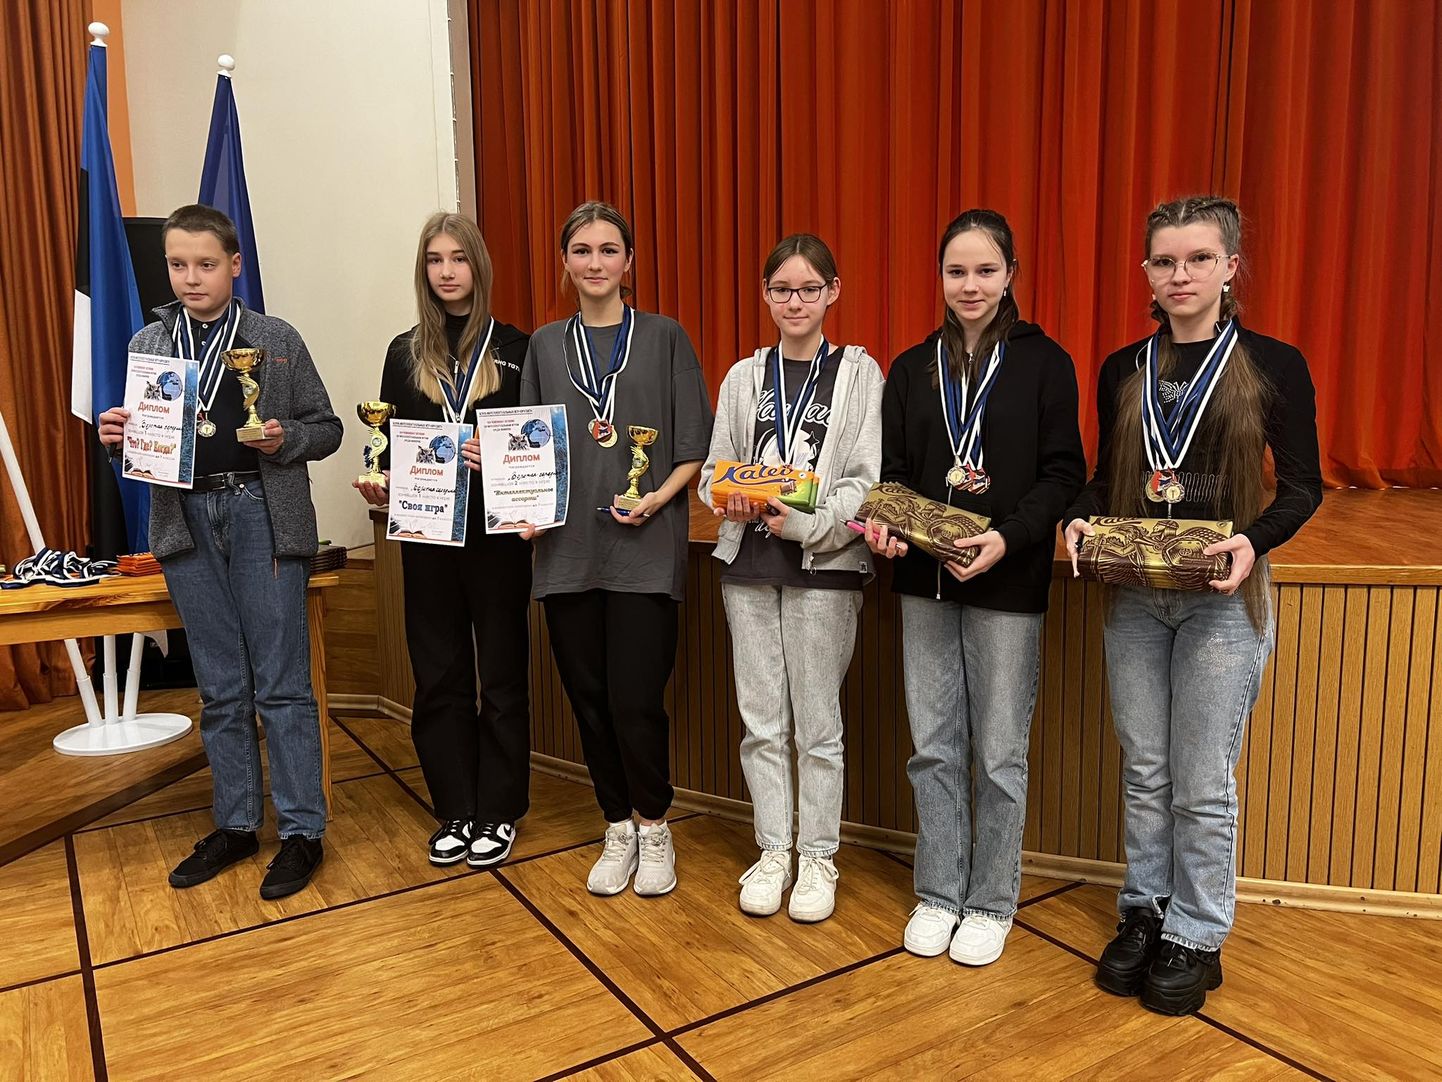 Команда семиклассников Кохтла-Ярвеской Кесклиннаской основной школы "Золотая середина" выиграла ХIII чемпионат Эстонии по интеллектуальным играм.